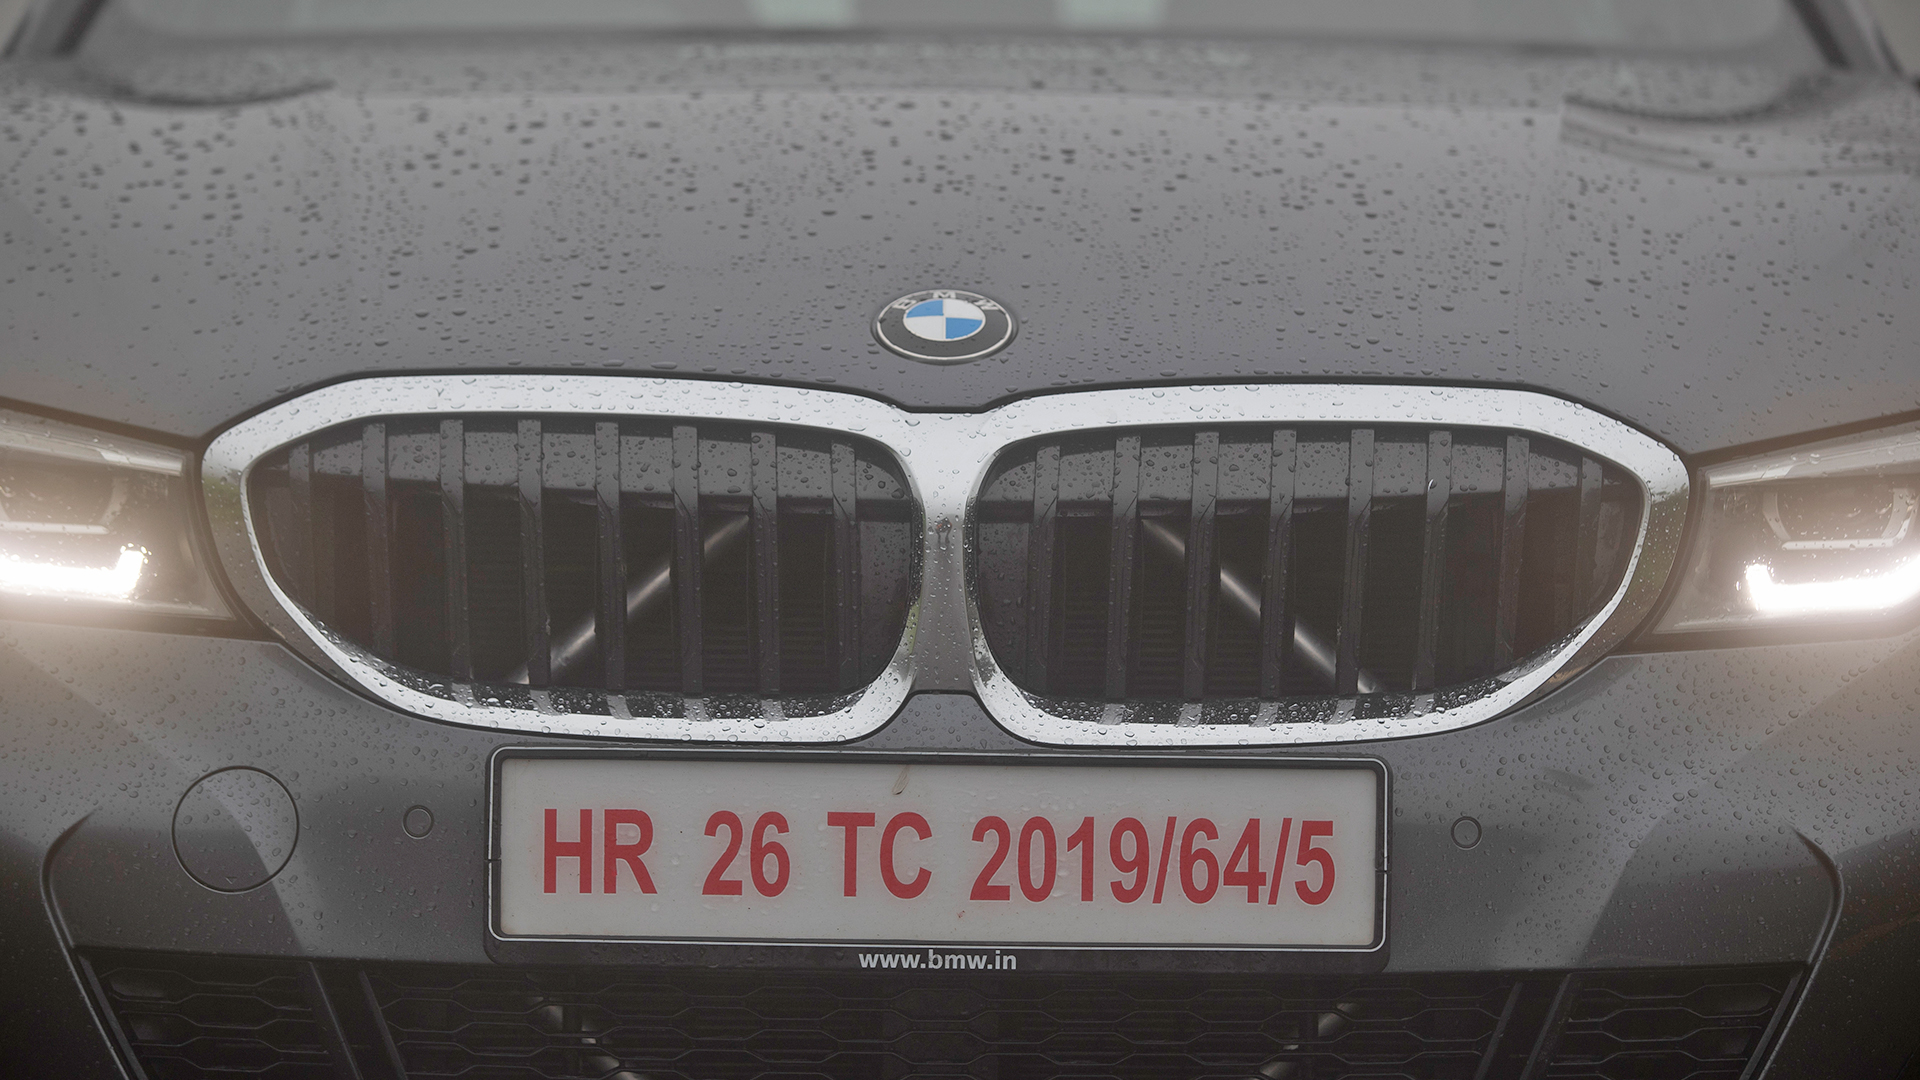 BMW 3 Series 2019 330i M Sport Exterior